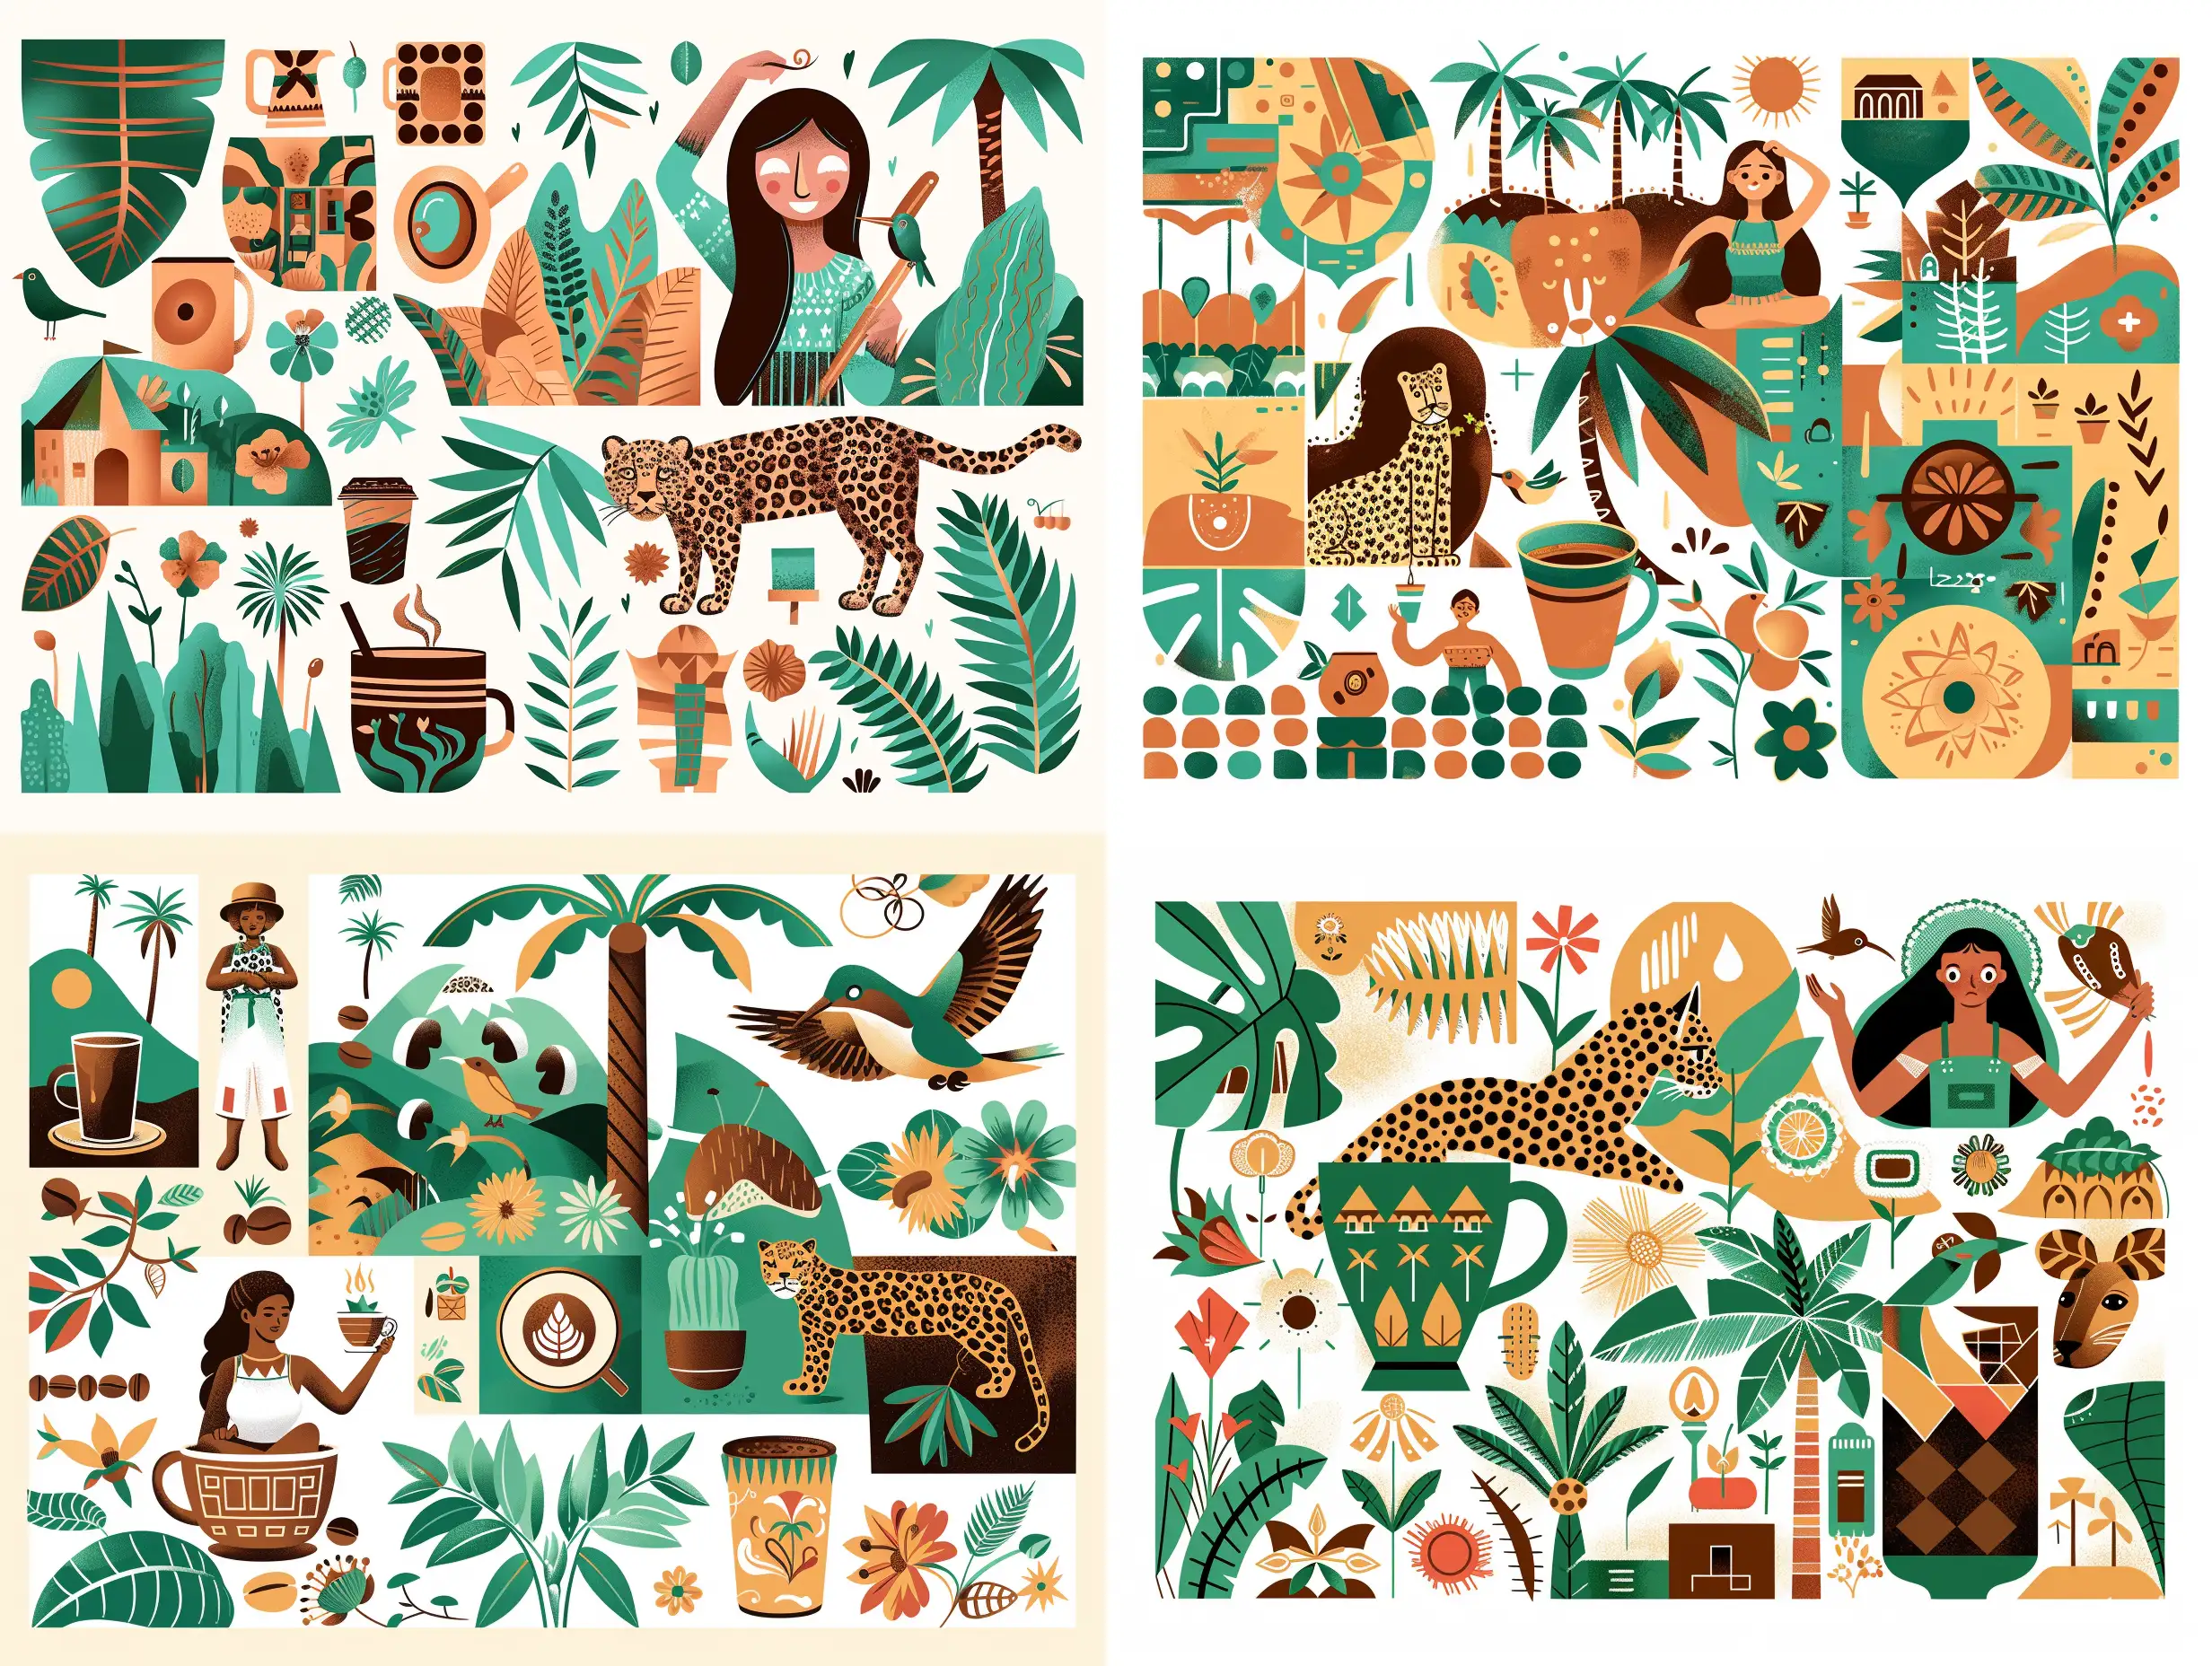 Иллюстрация кофе в чашке, девушка из Бразилии , леопард, Колибри, листья пальмы, кофе, цветы бразилии на белом фоне- serf https://mir-s3-cdn-cf.behance.net/project_modules/max_1200/fb85c778855831.5cb0c1615d660.jpg